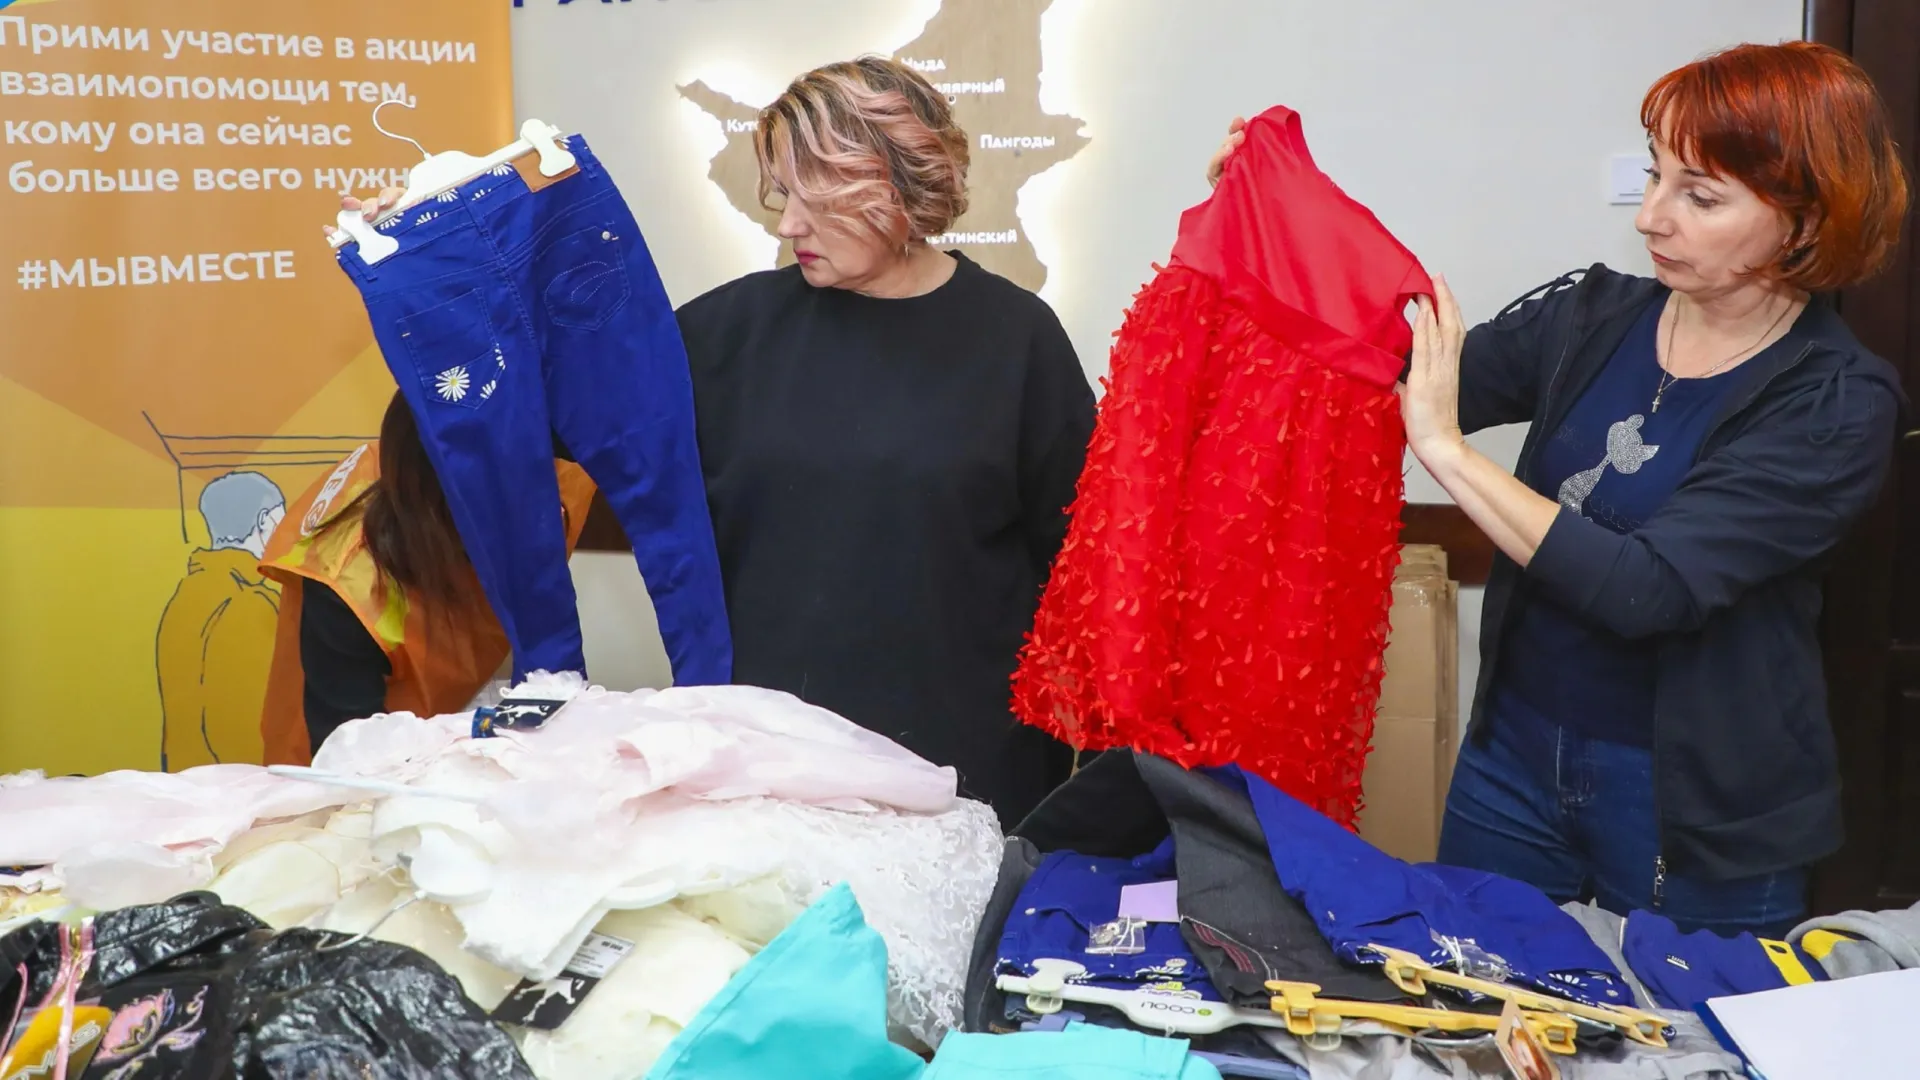 Жители ДНР получат в подарок с Ямала зимнюю одежду для малышей, комплекты для новорожденных, праздничные платья для девочек. Фото: t.me/nadym_region